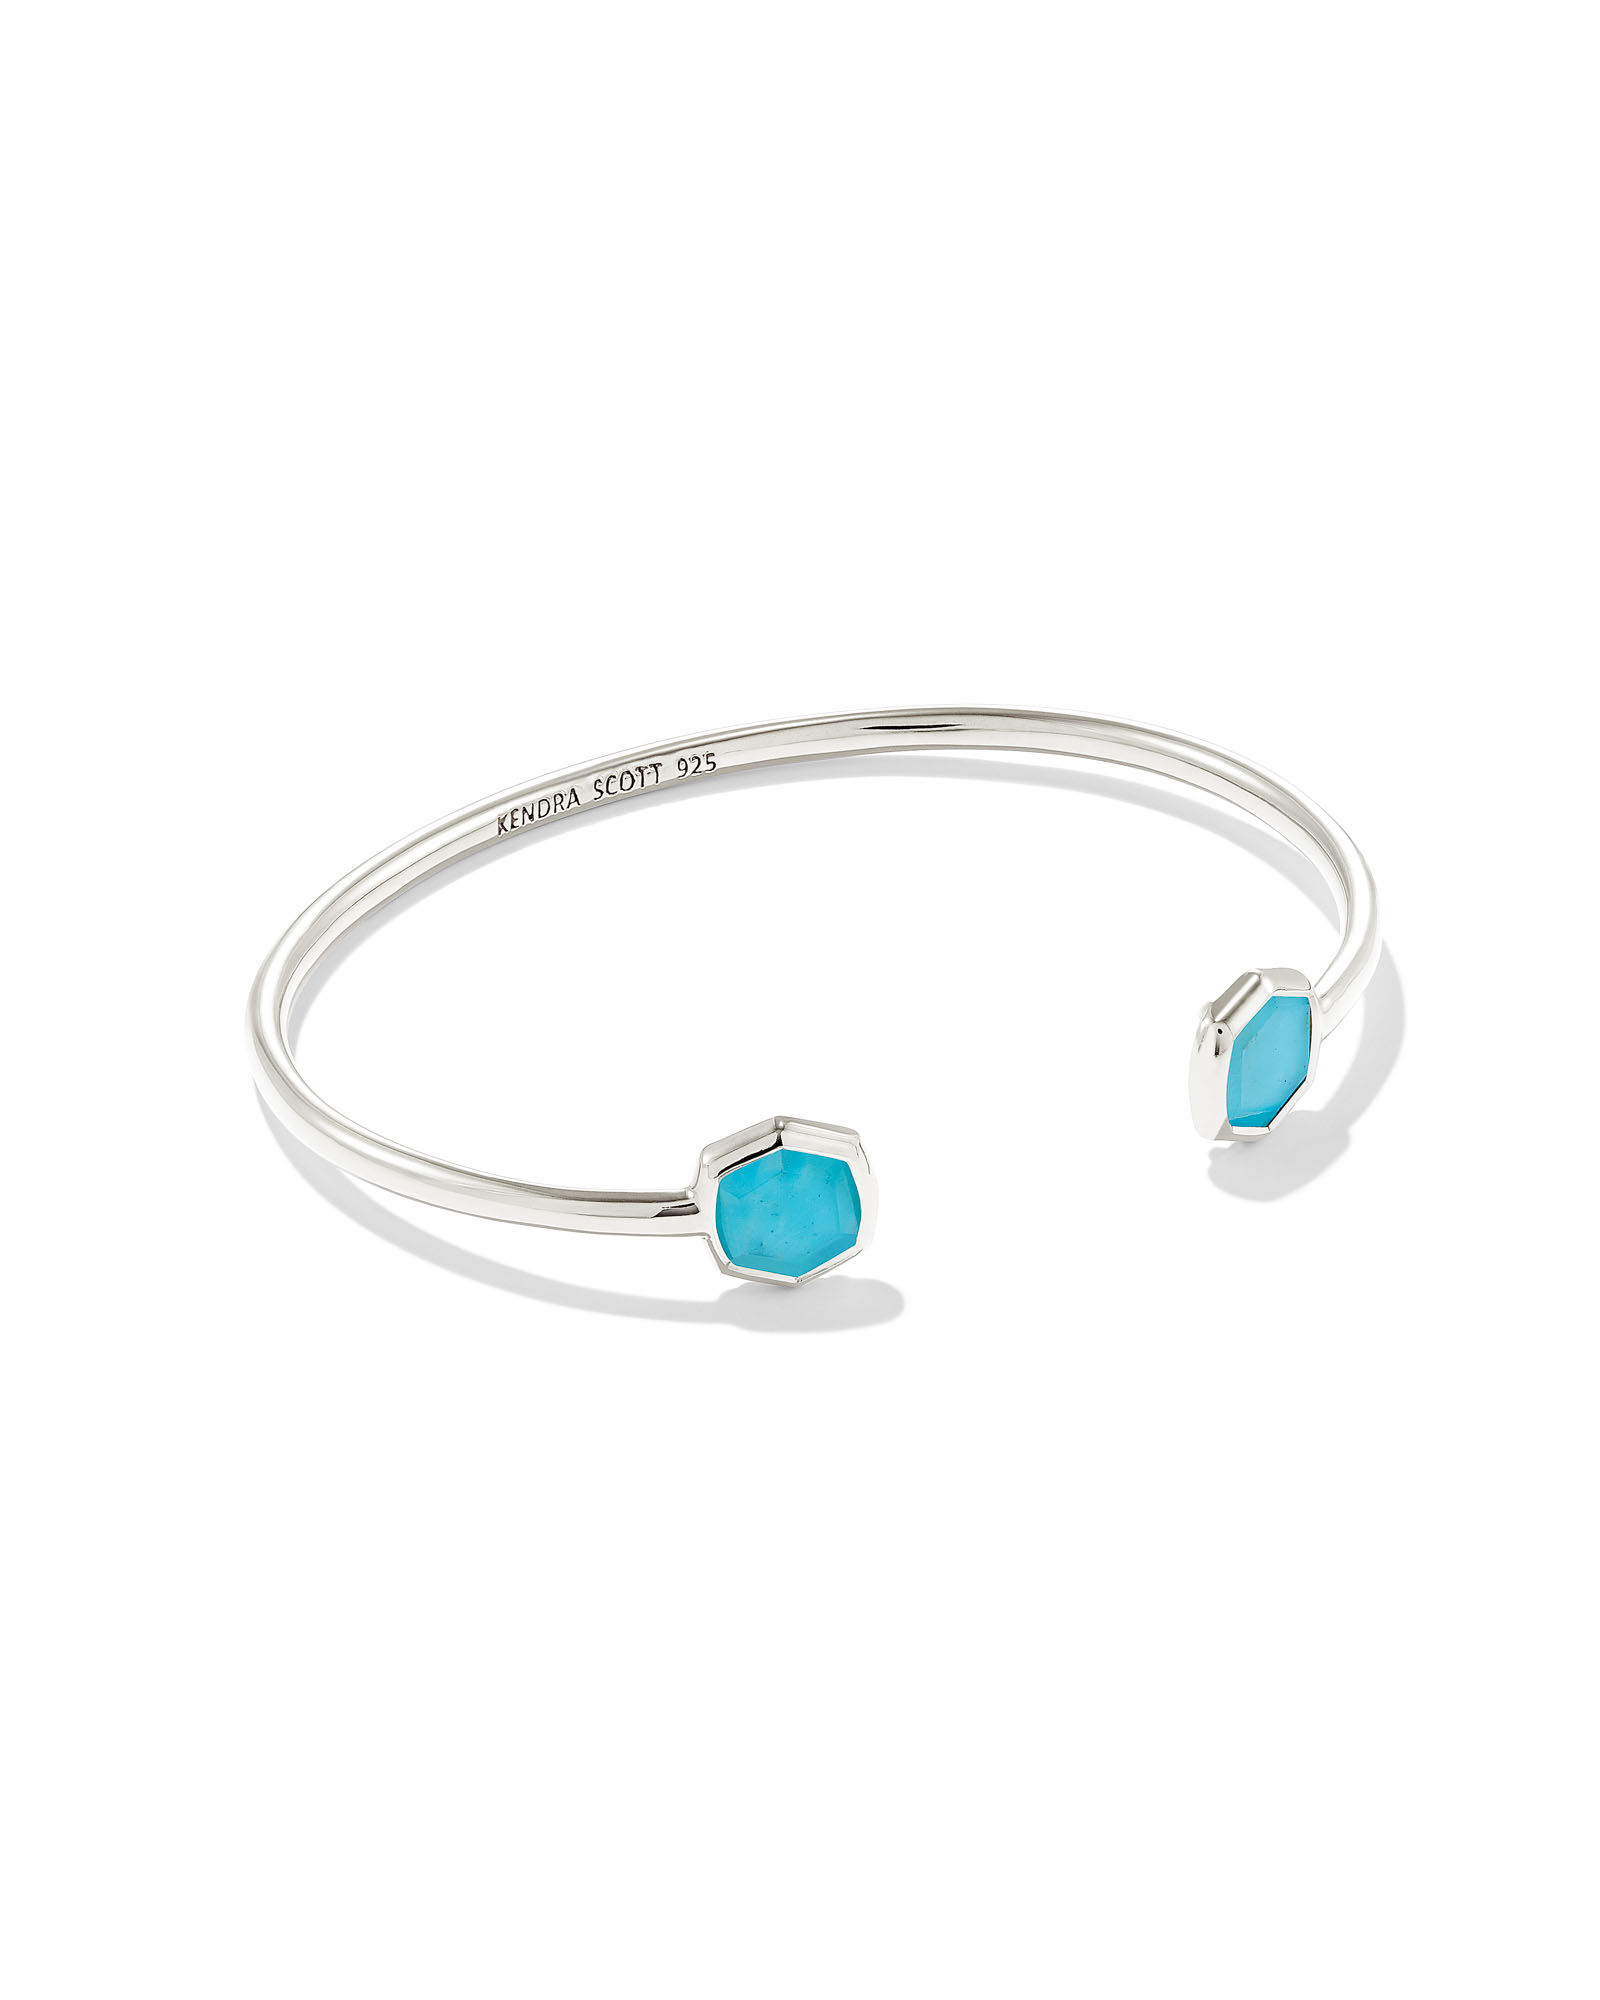 Davis Sterling Silver Small Cuff Bracelet in Turquoise | Kendra Scott